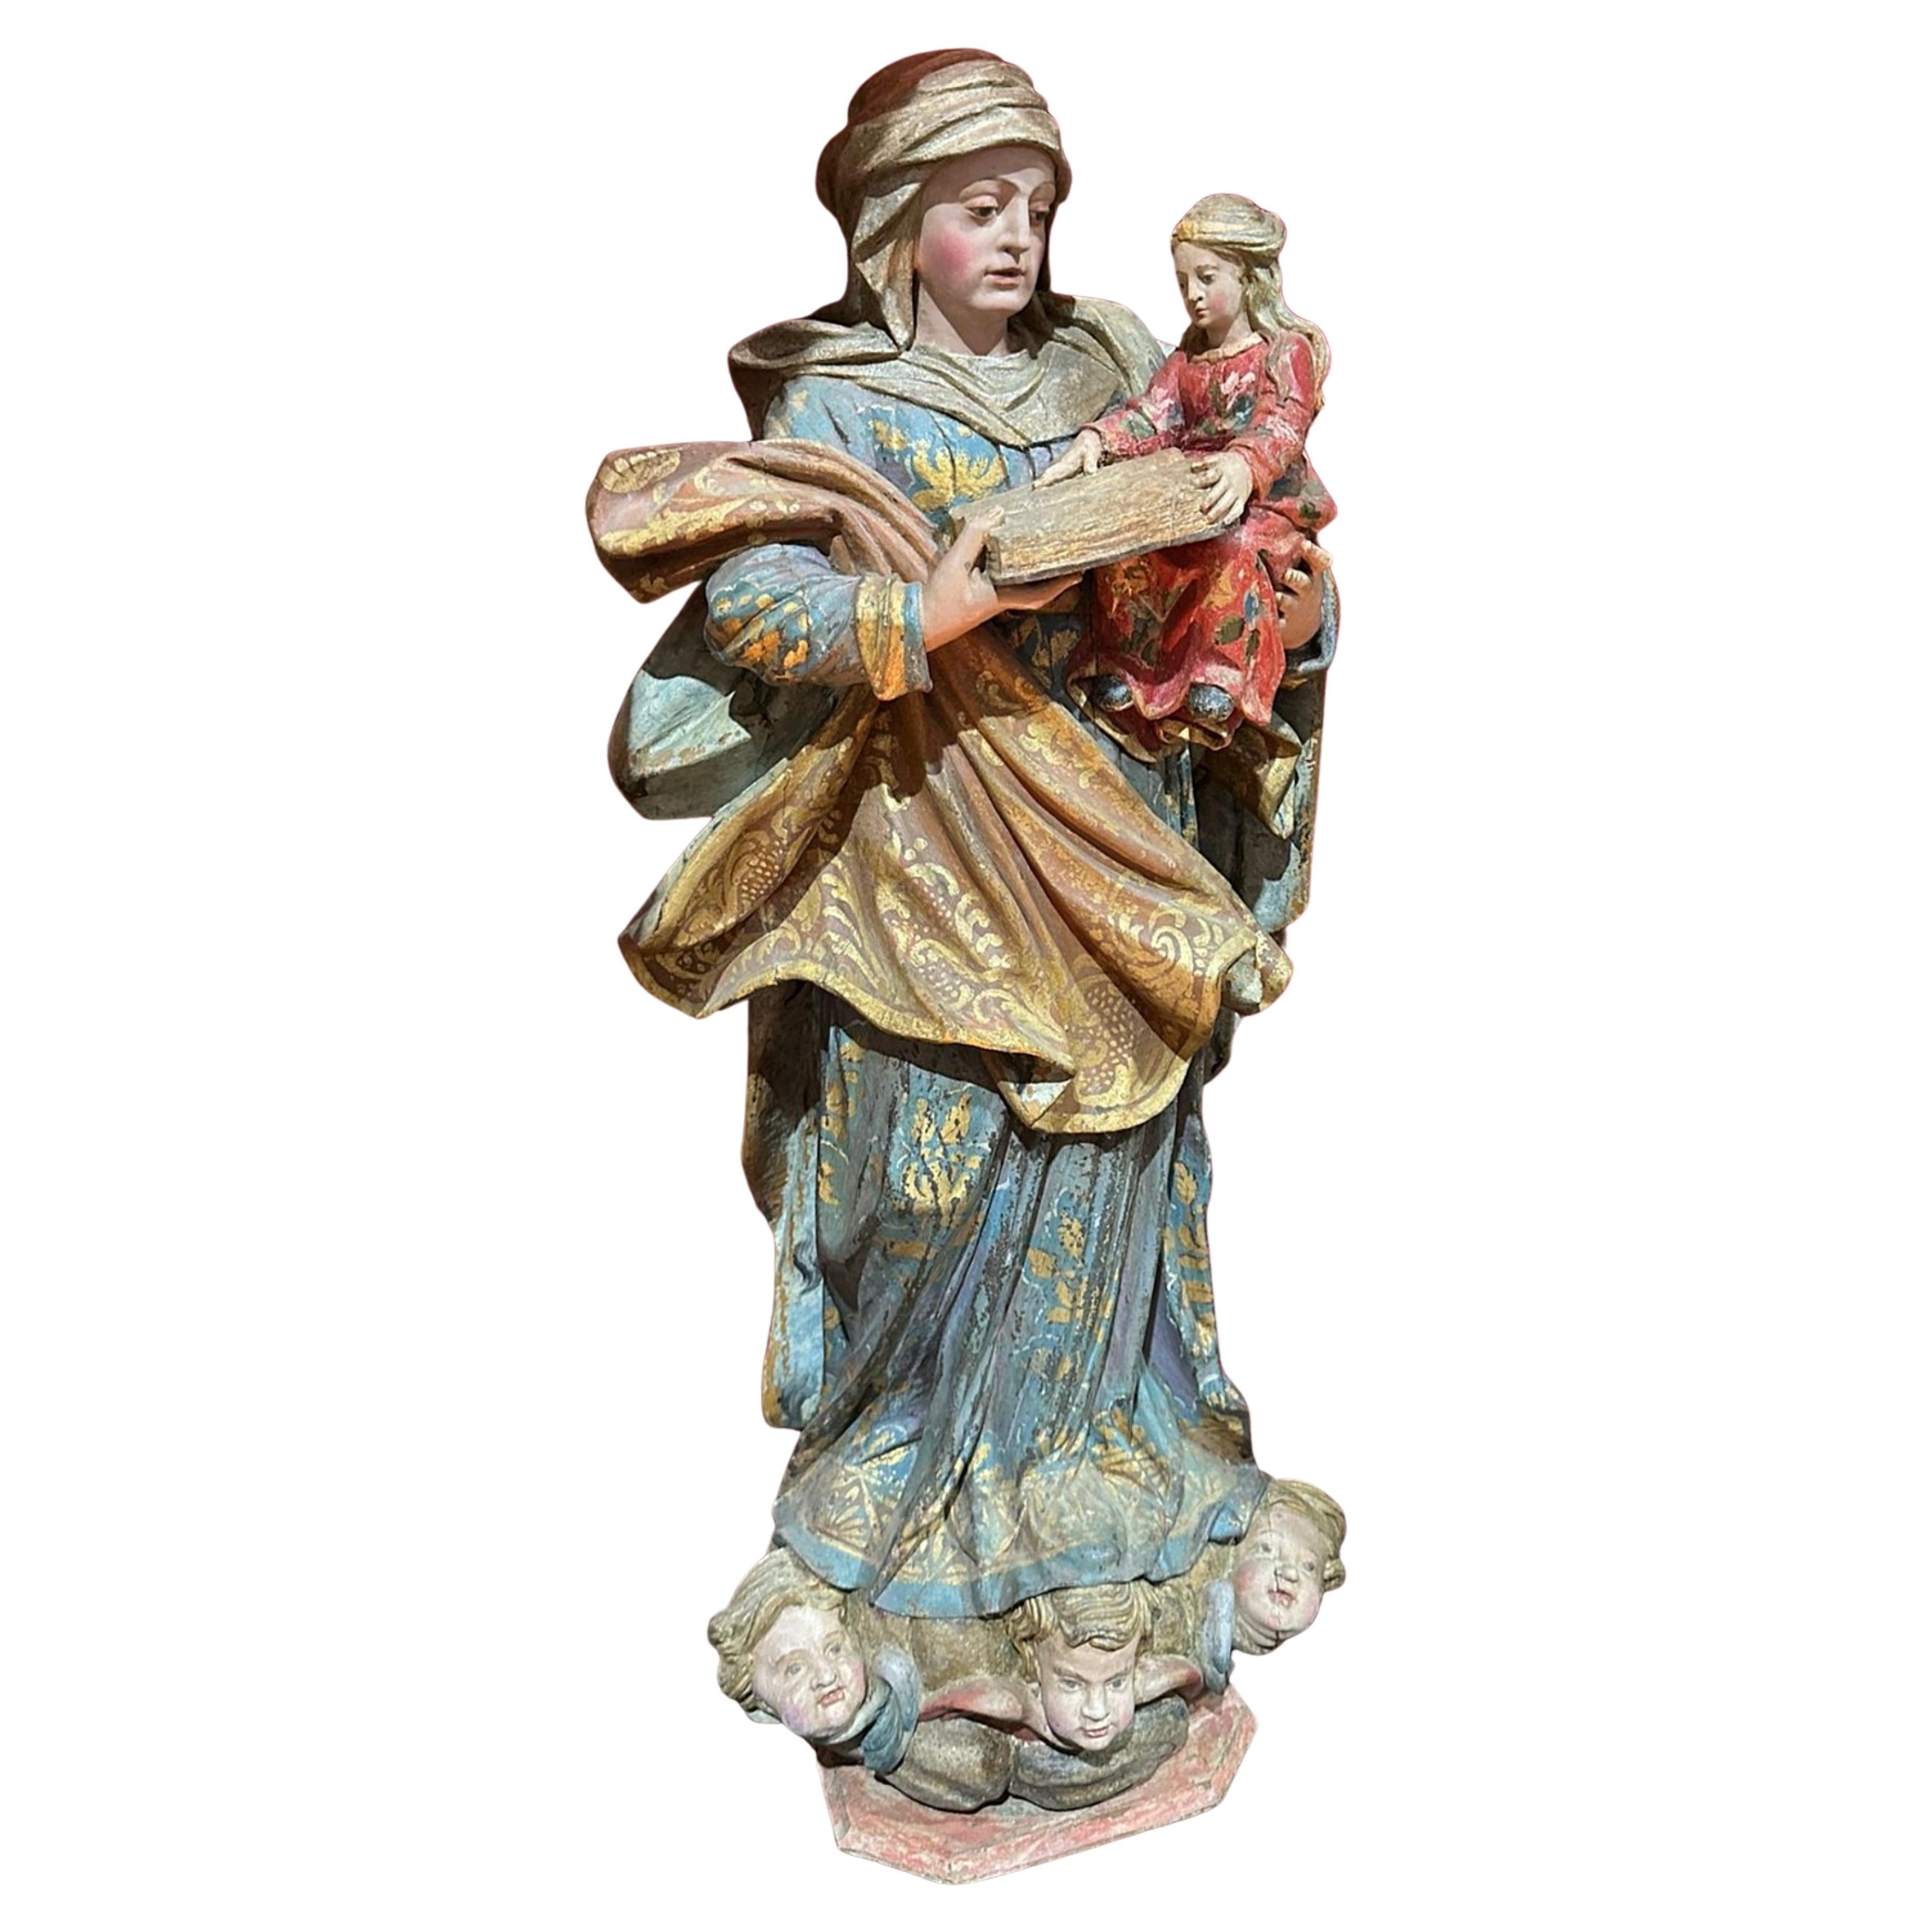 Importante sculpture portugaise du 17ème siècle, Notre dame et notre enfant Jésus